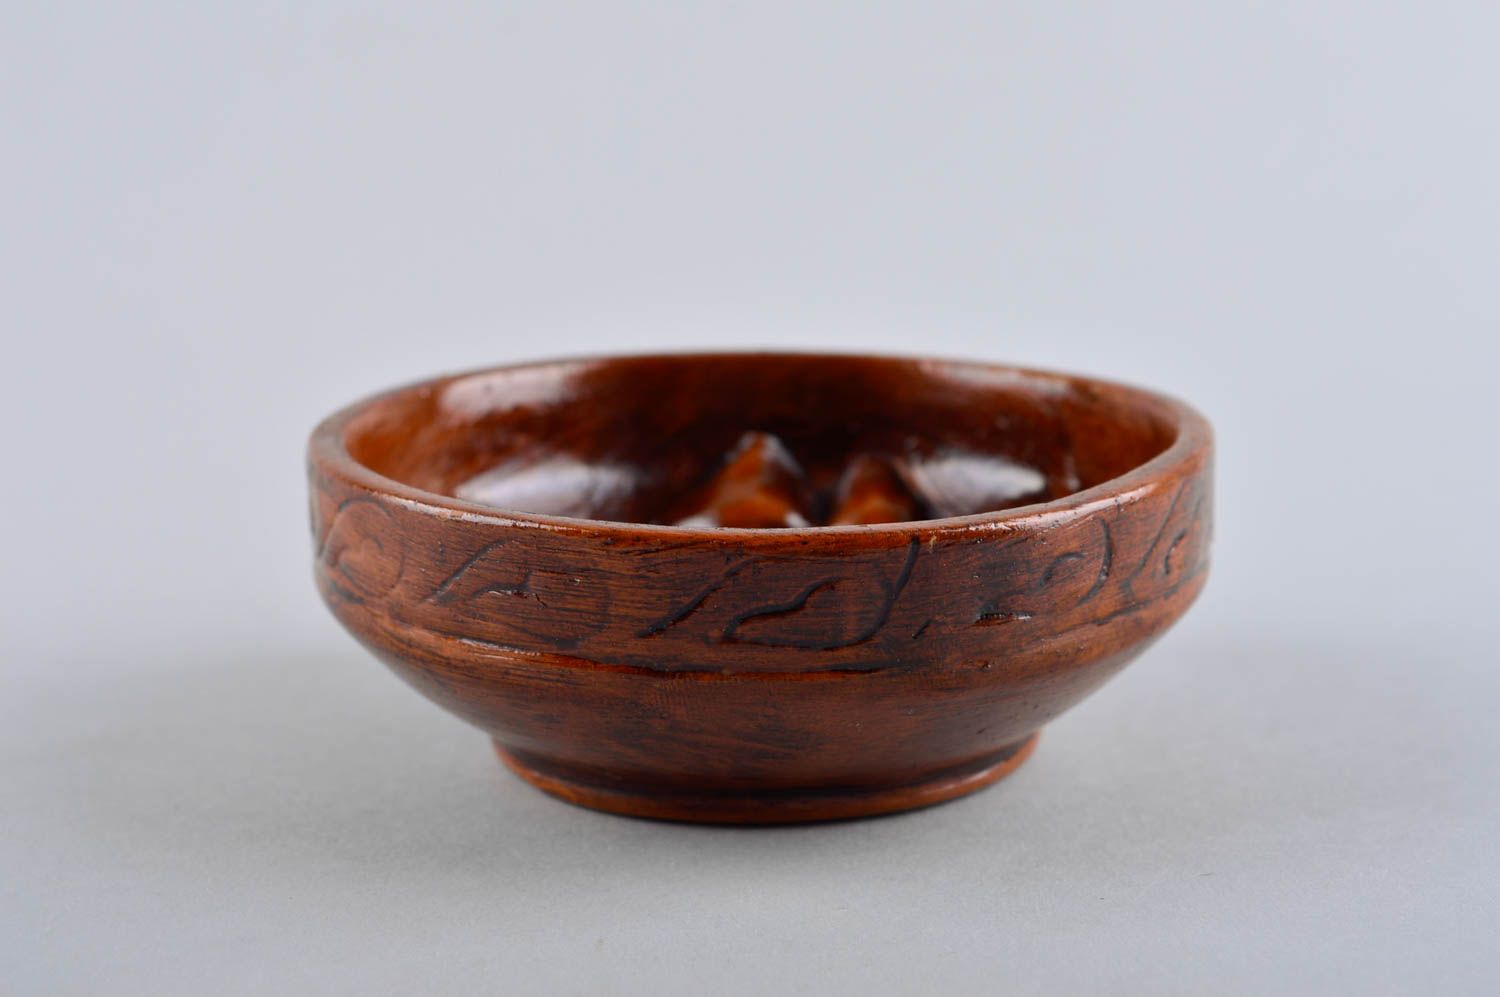 Handgemachte Keramik Tee Schale Geschirr aus Ton Geschenk Idee klein braun foto 4